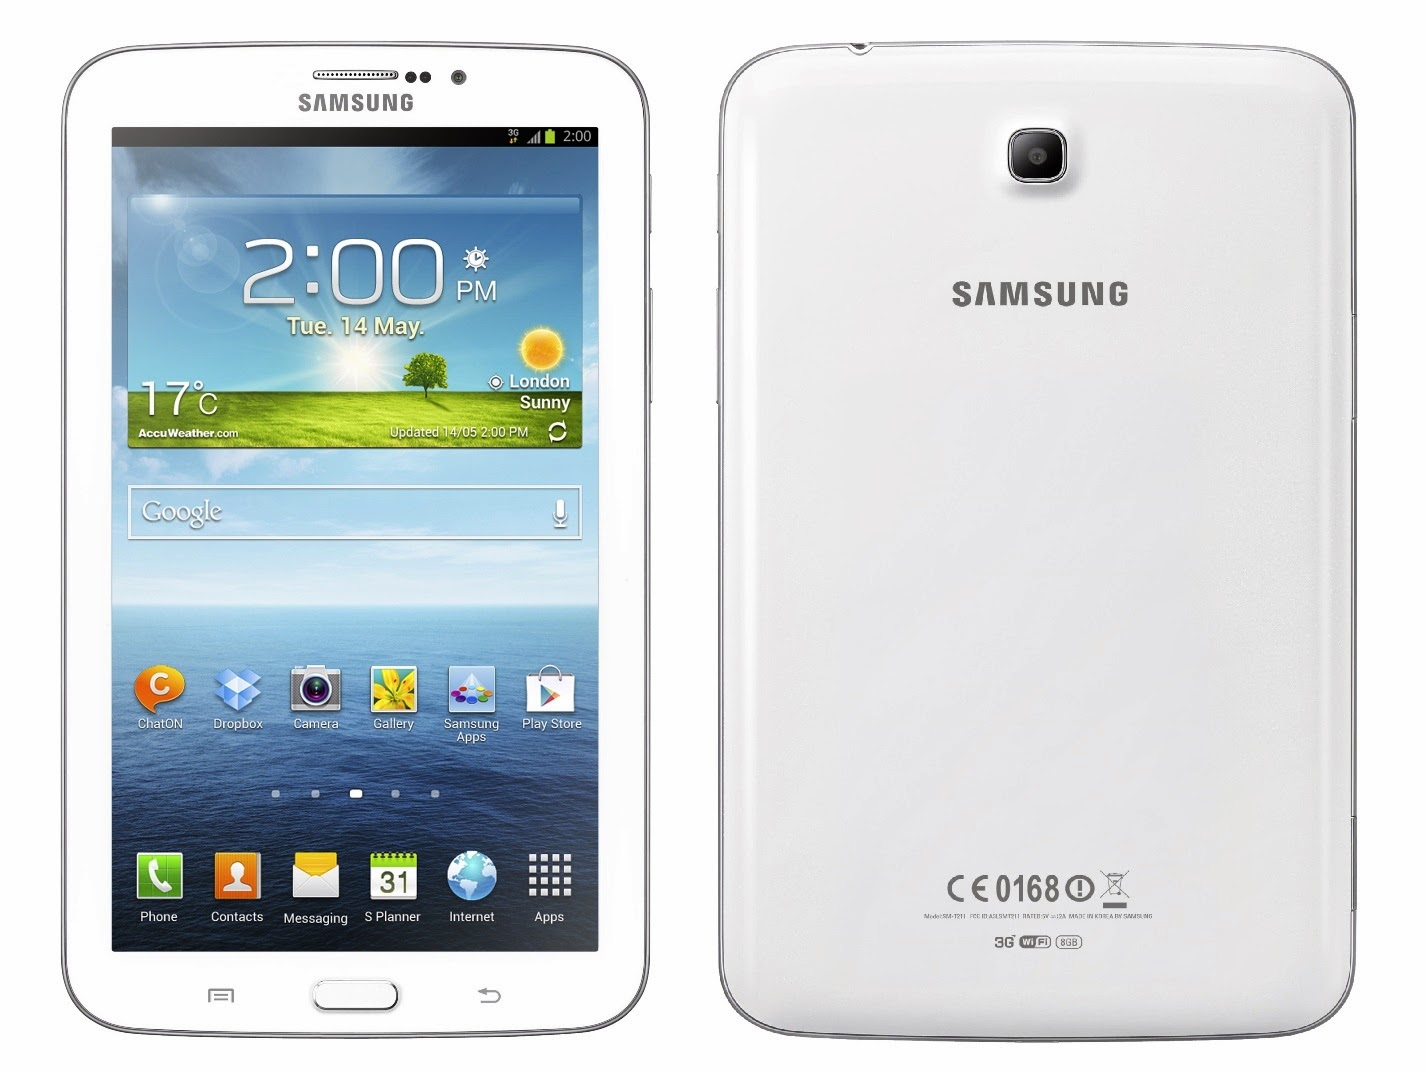 Samsung Galaxy Tab 3 7.0 Android Tablet Harga 3 Jutaan